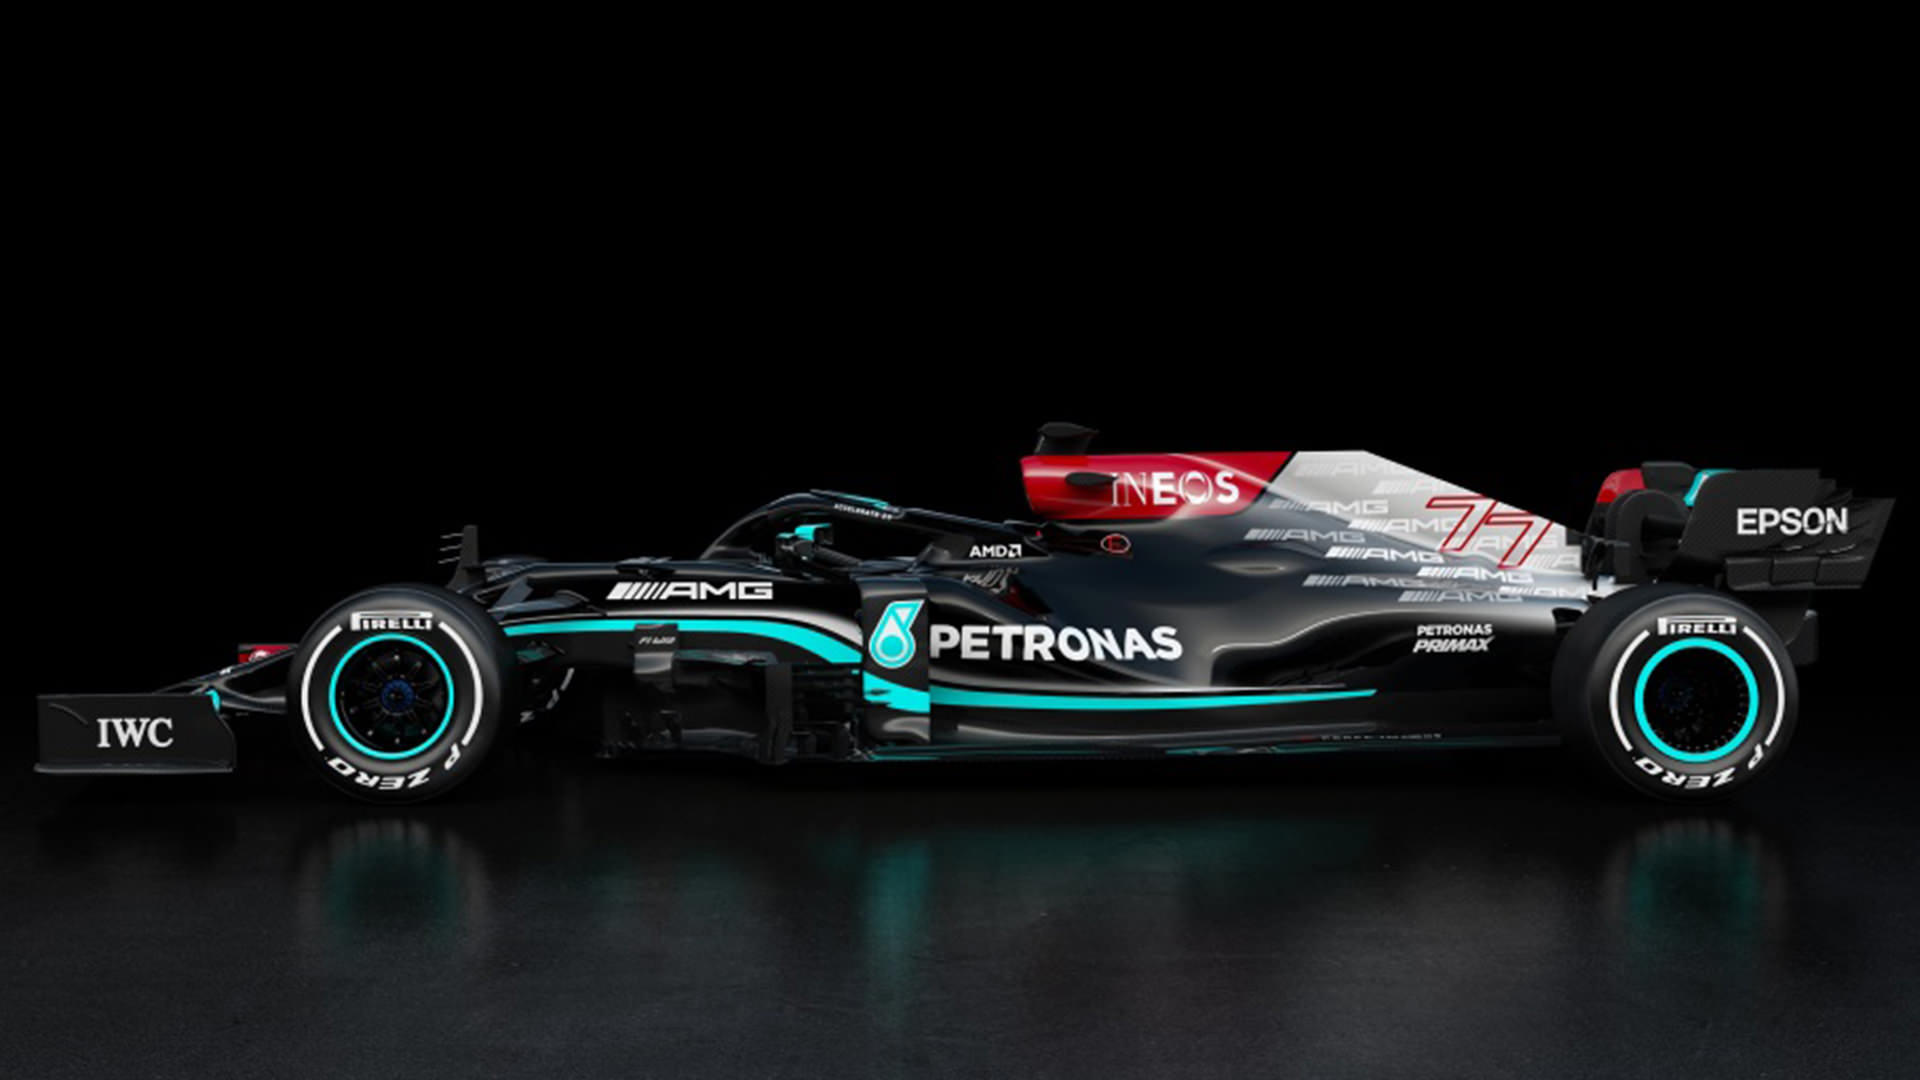 نمای جانبی خودروی تیم فرمول یک مرسدس ای ام جی پتروناس / Mercedes-AMG Petronas W12 car در فصل 2021 سیاه رنگ